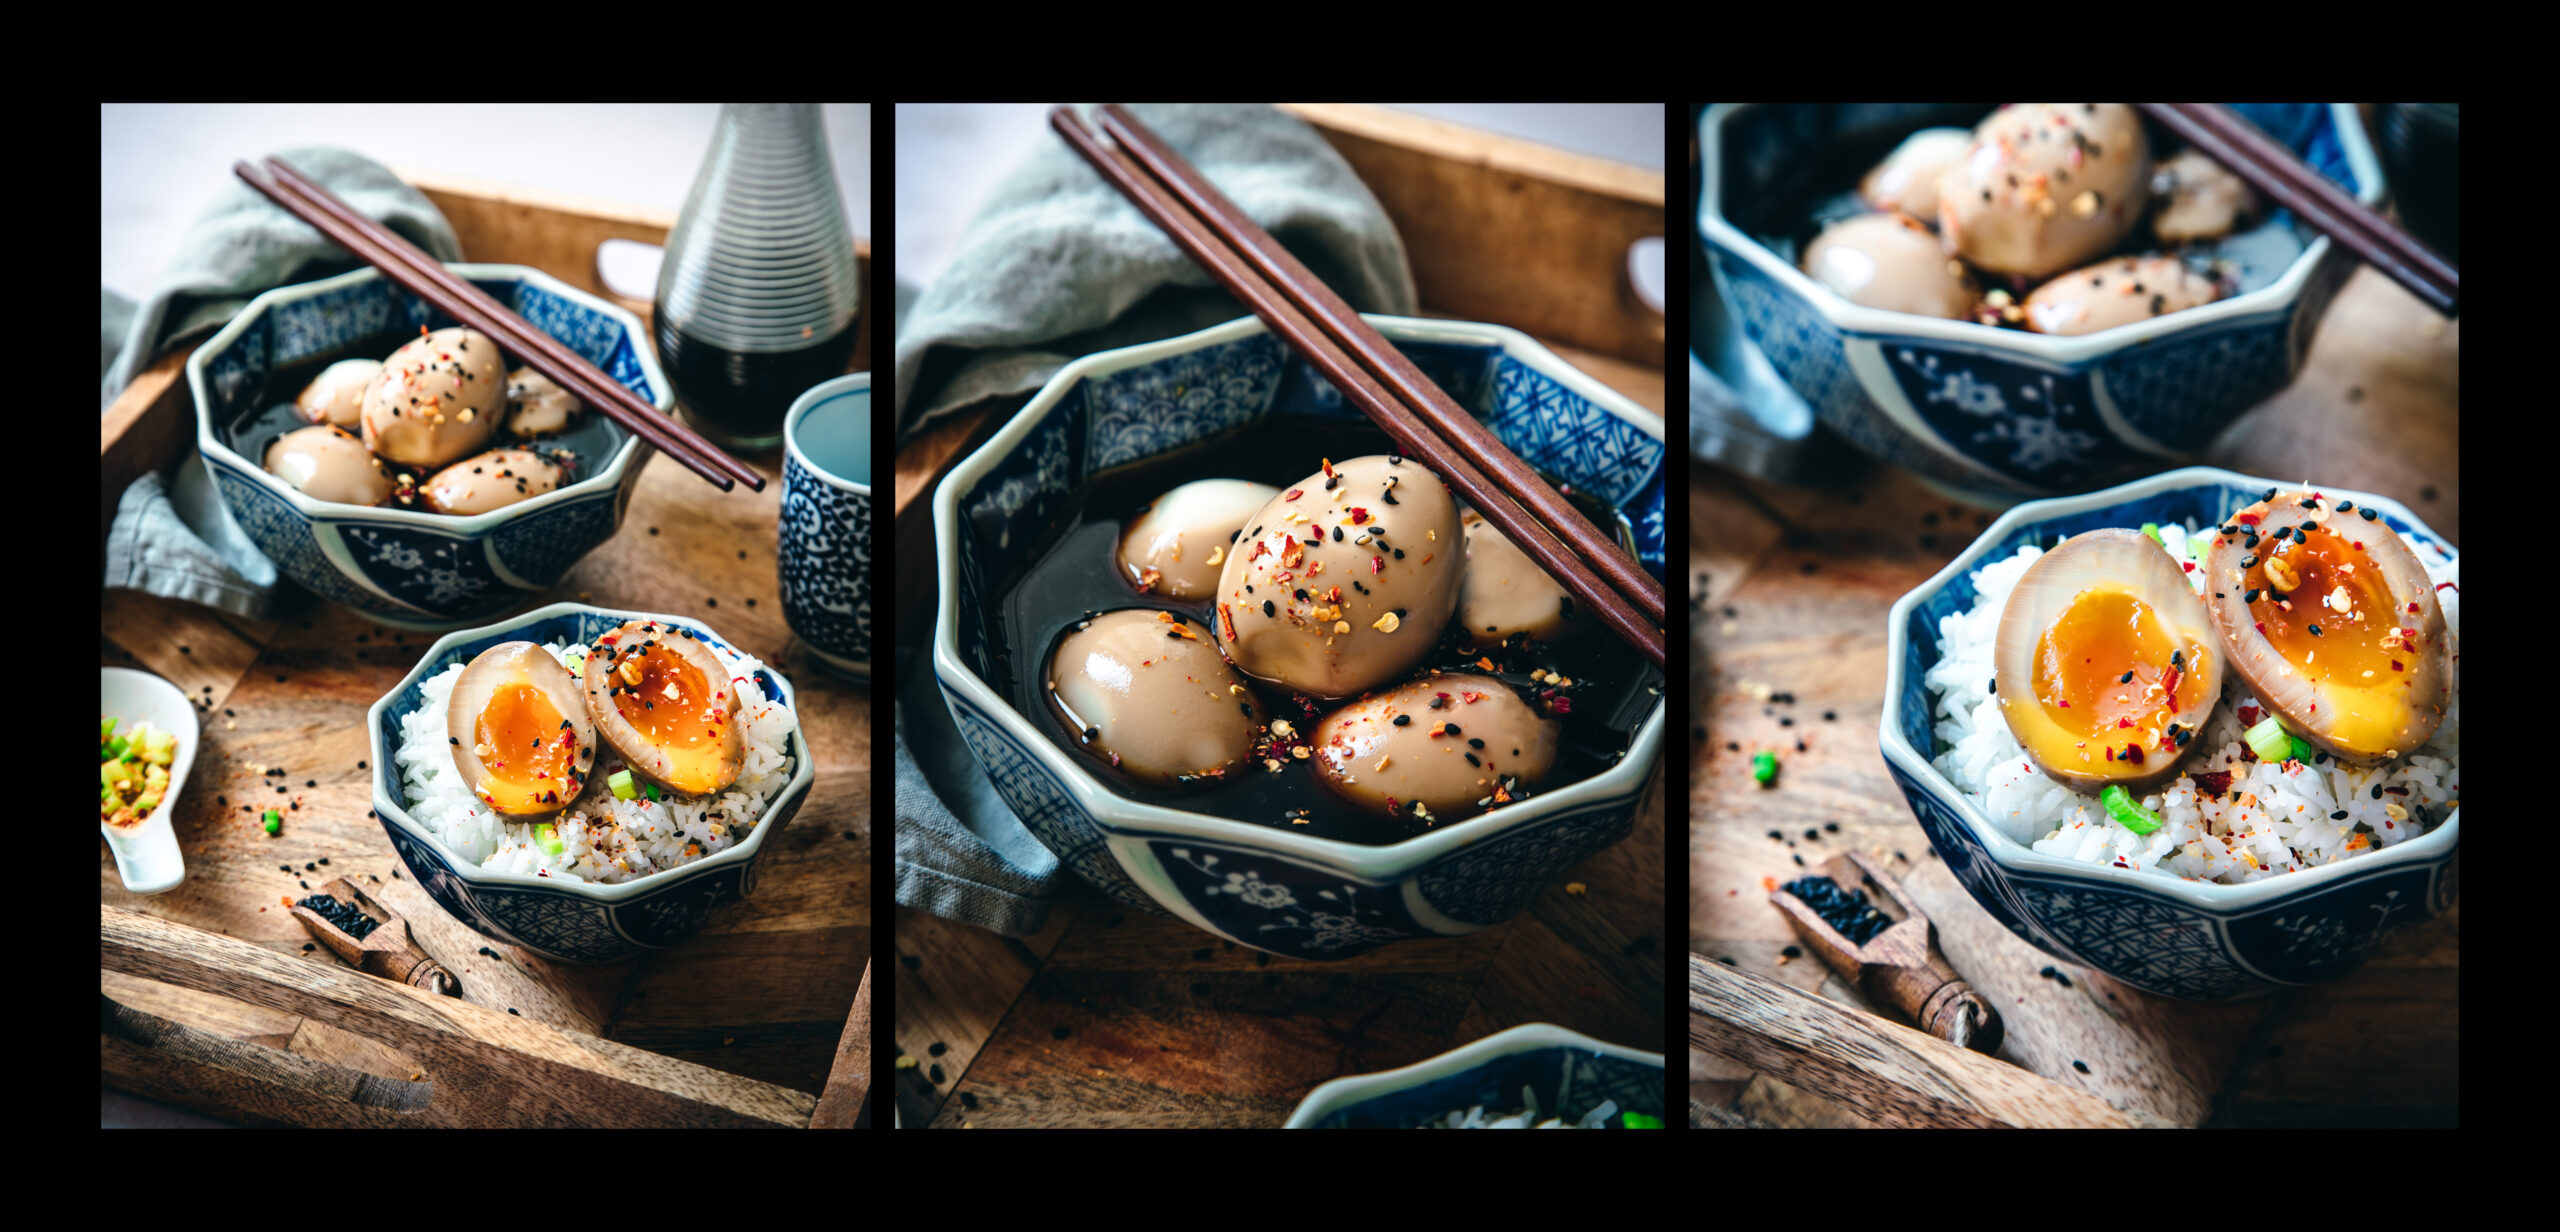 Une image appétissante d'ajitsuke tamago, un type de oeuf mariné japonais souvent utilisé comme garniture dans les plats de nouilles ramen. Les oeufs sont parfaitement cuits à la coque et la couleur orange foncé de leur jaune est mise en valeur par la marinade brune et brillante. La composition de l'image est simple et épurée, permettant aux détails de l'oeuf et de la marinade de ressortir. Cette photo évoque l'authenticité et la délicatesse de la cuisine japonaise traditionnelle. Lestudiova - Audibert Vanessa, Directrice artistique, styliste et photographe culinaire.